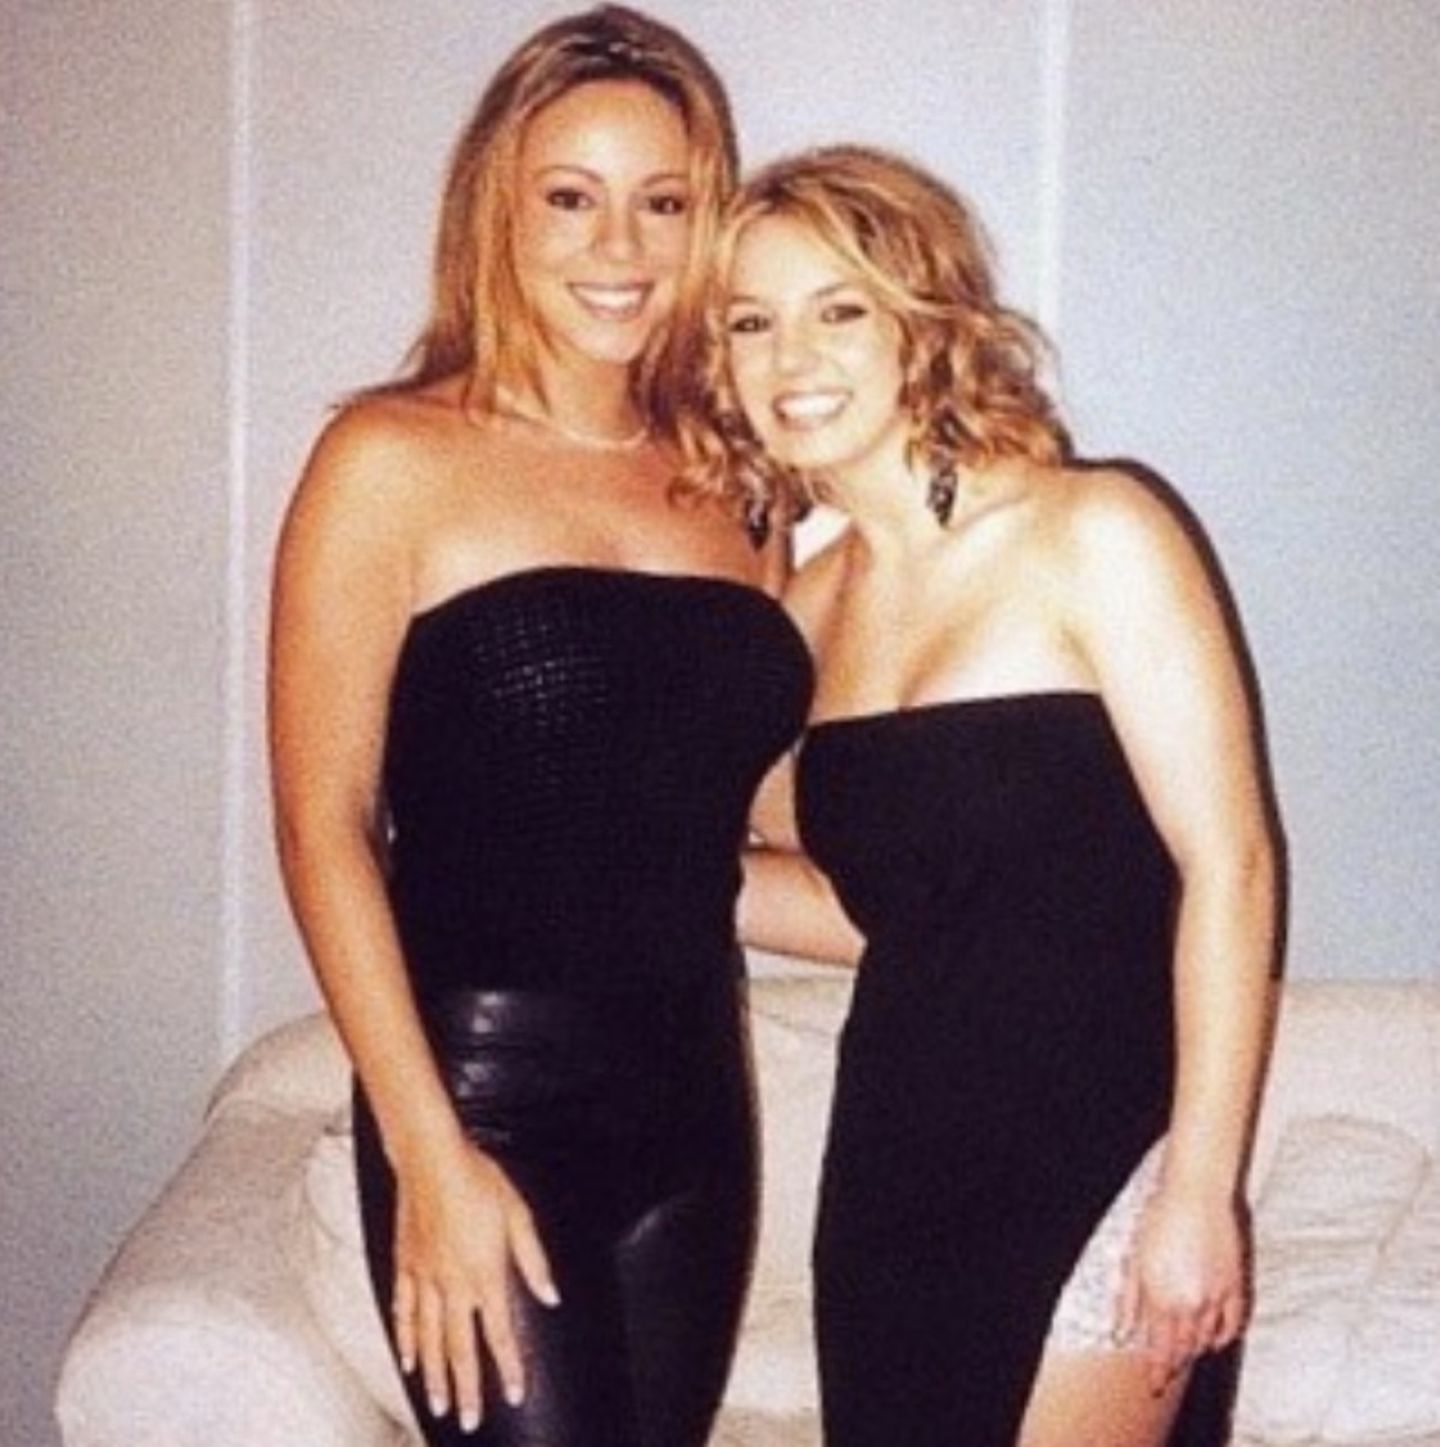 Mariah Carey outet sich als großer Fan ihrer jüngeren Kollegin Britney Spears. Auf ihrem Instagram-Account teilt die Pop-Diva dieses Foto aus vergangenen Tagen und hofft auf ein baldiges Wiedersehen. “Wir brauchen ein neues Foto, Brit”, schreibt Carey zu einem Foto der beiden am Donnerstag.